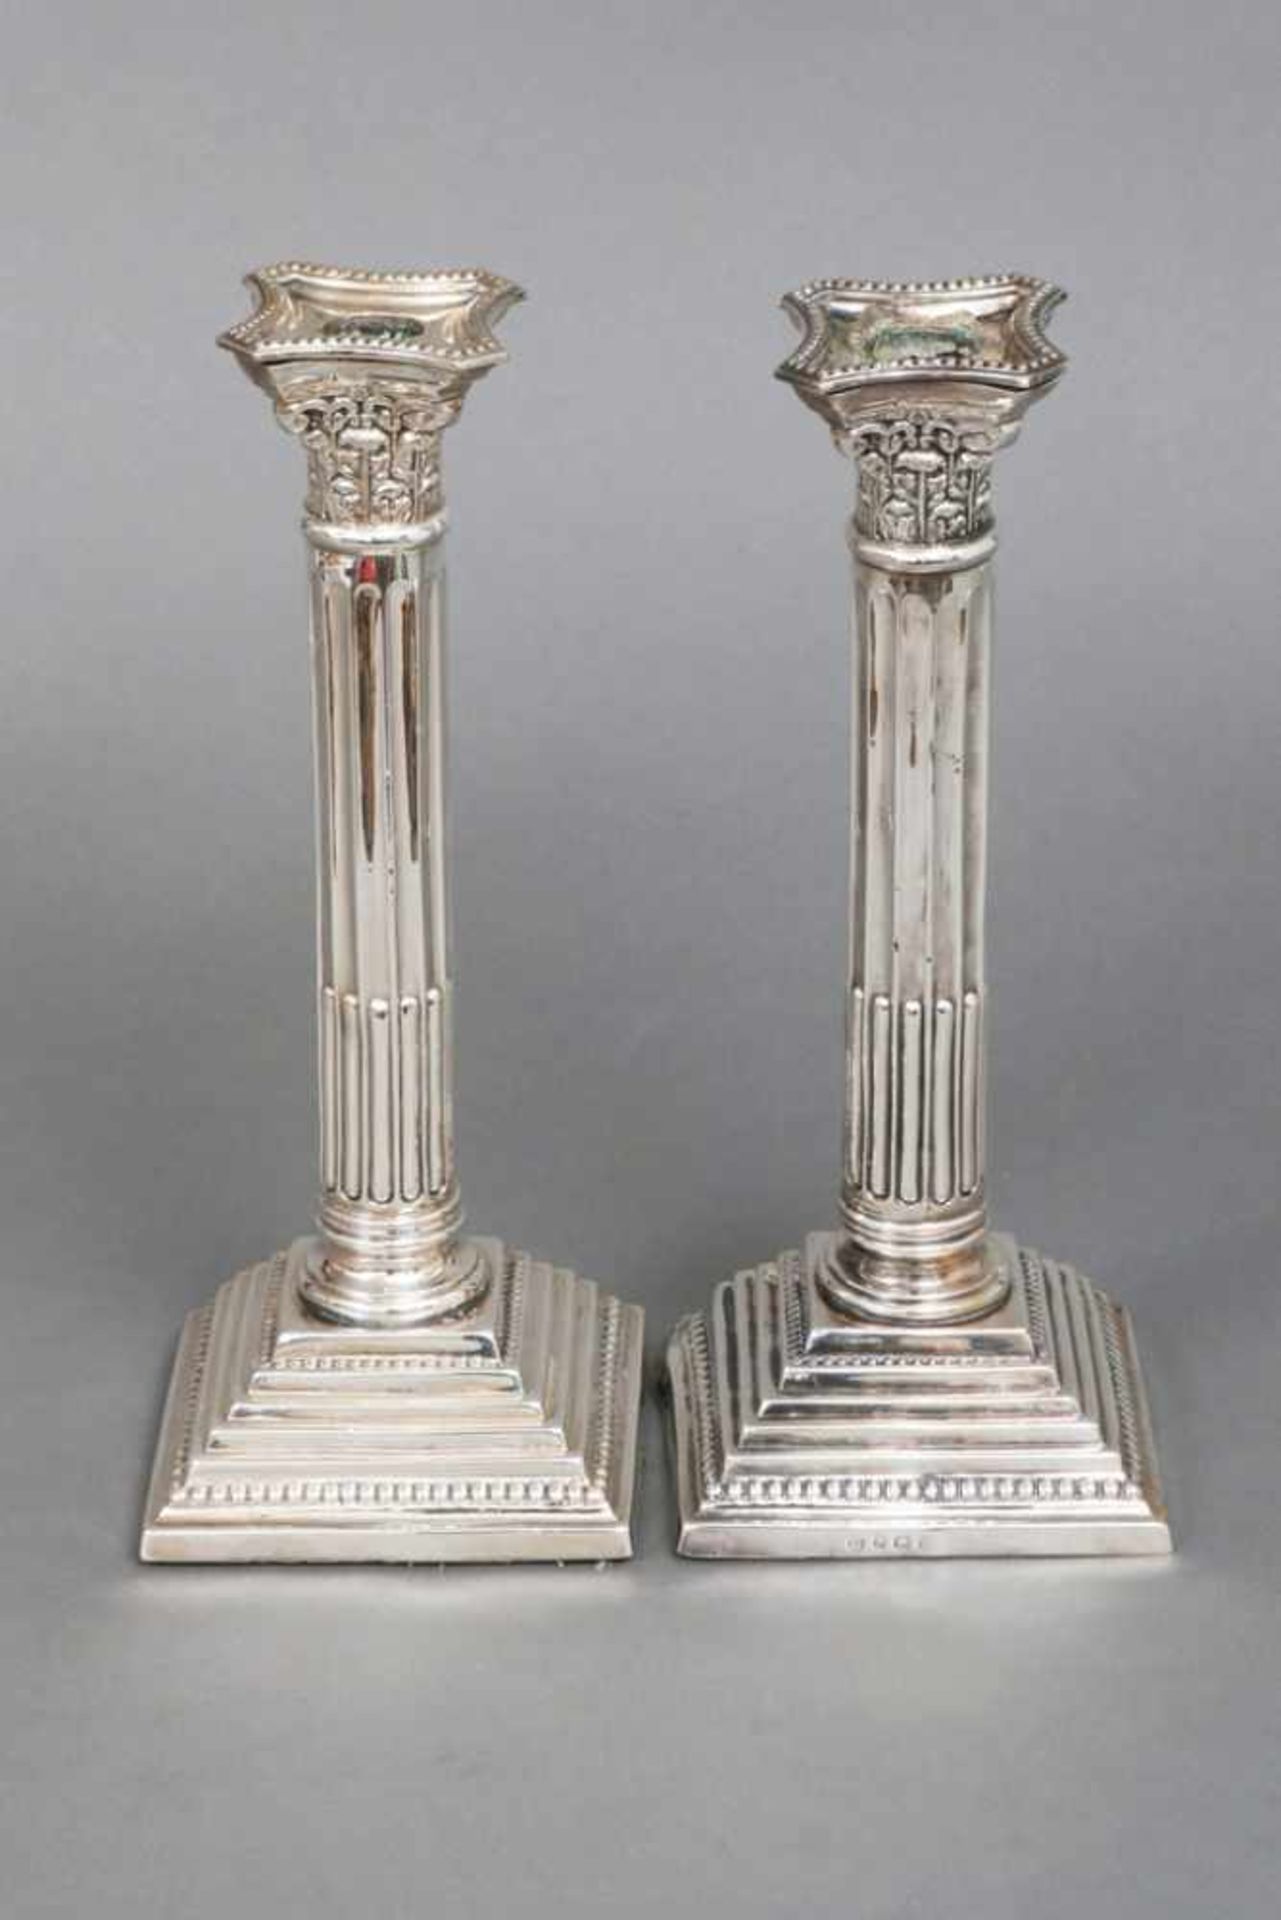 Paar Leuchter Sterling Silber, Birmingham, 1911, korinthische Säulen auf getrepptem Stand, je eine